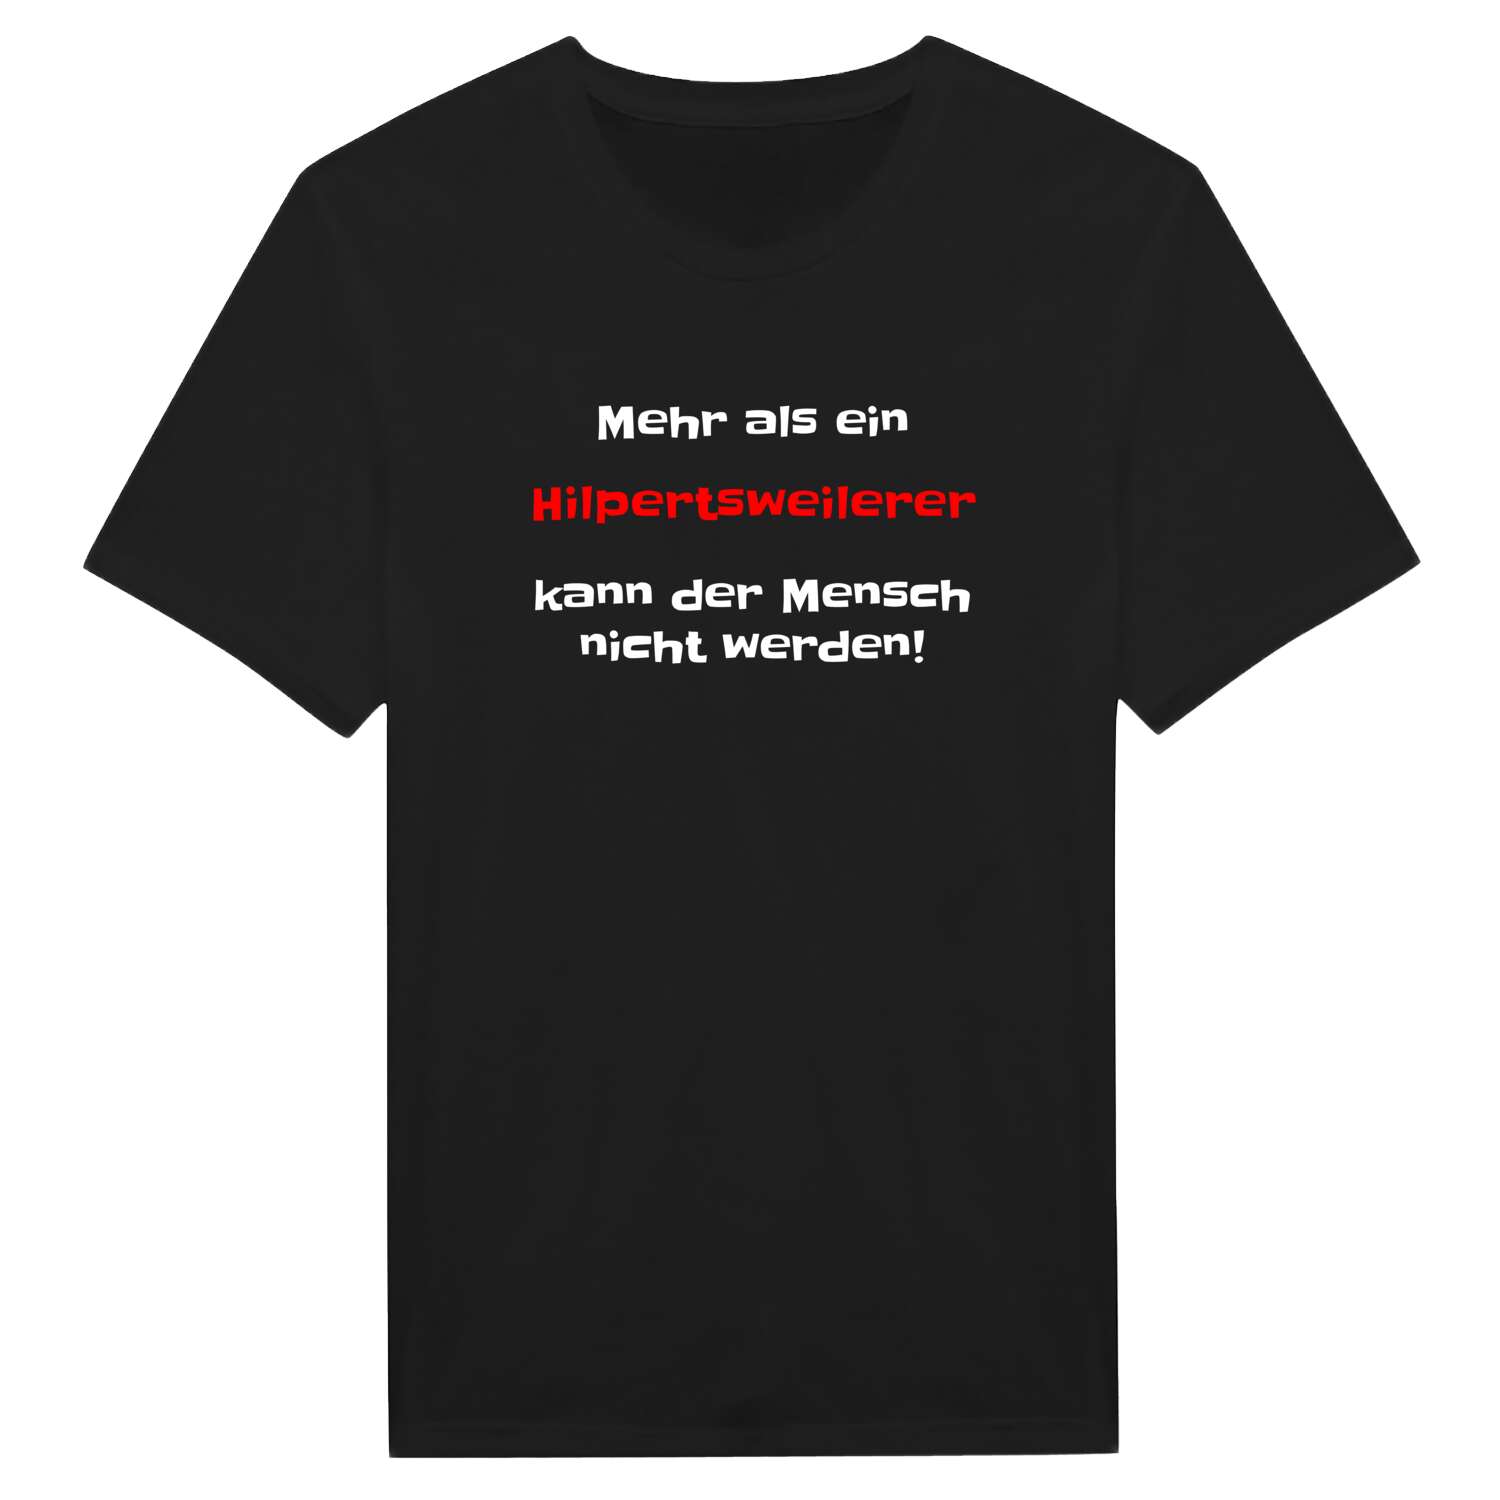 Hilpertsweiler T-Shirt »Mehr als ein«